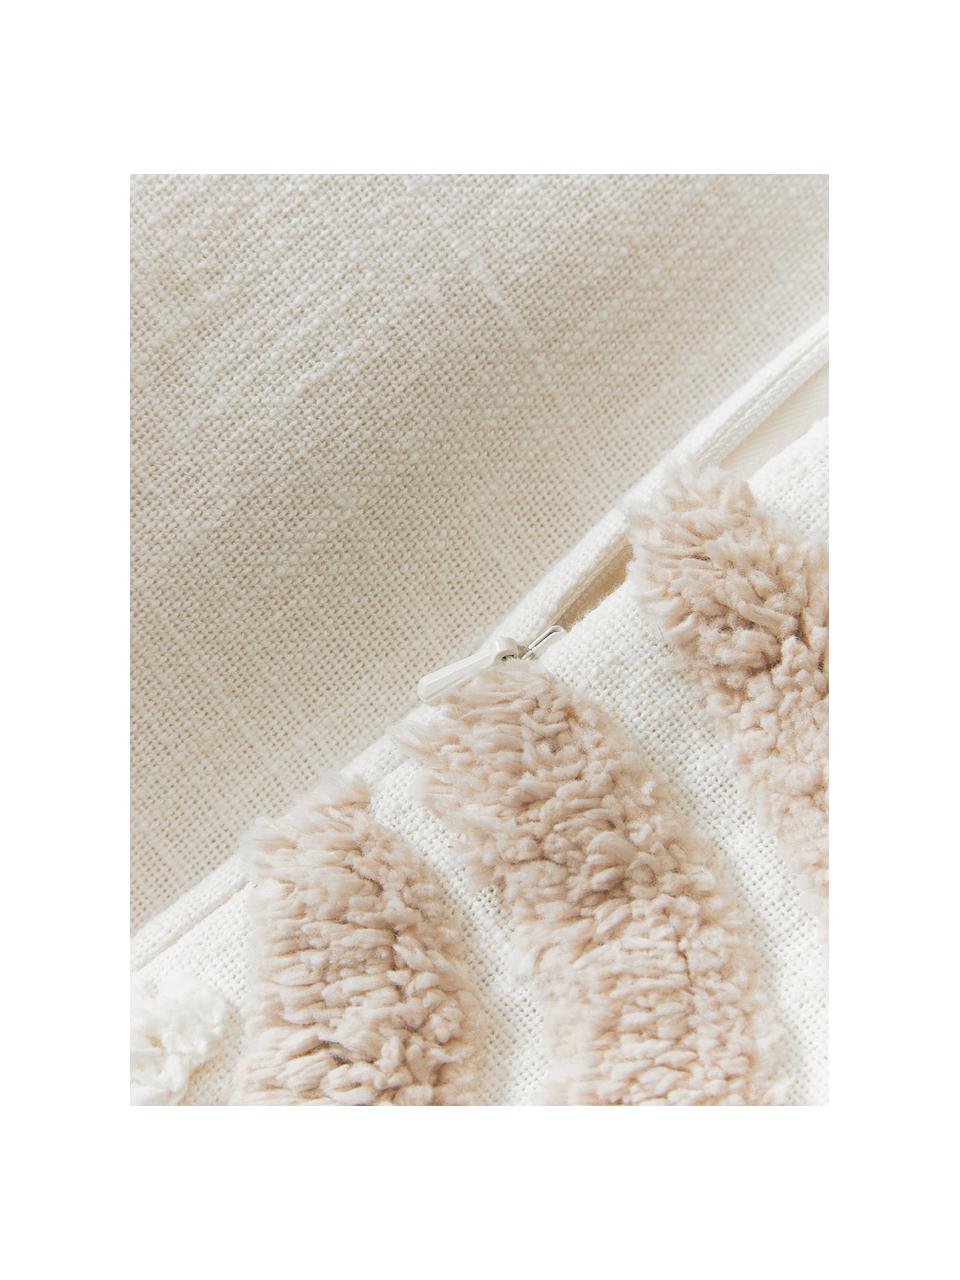 Copricuscino con decoro capitonnè Coraline, 100% cotone, Beige chiaro, bianco crema, Larg. 45 x Lung. 45 cm